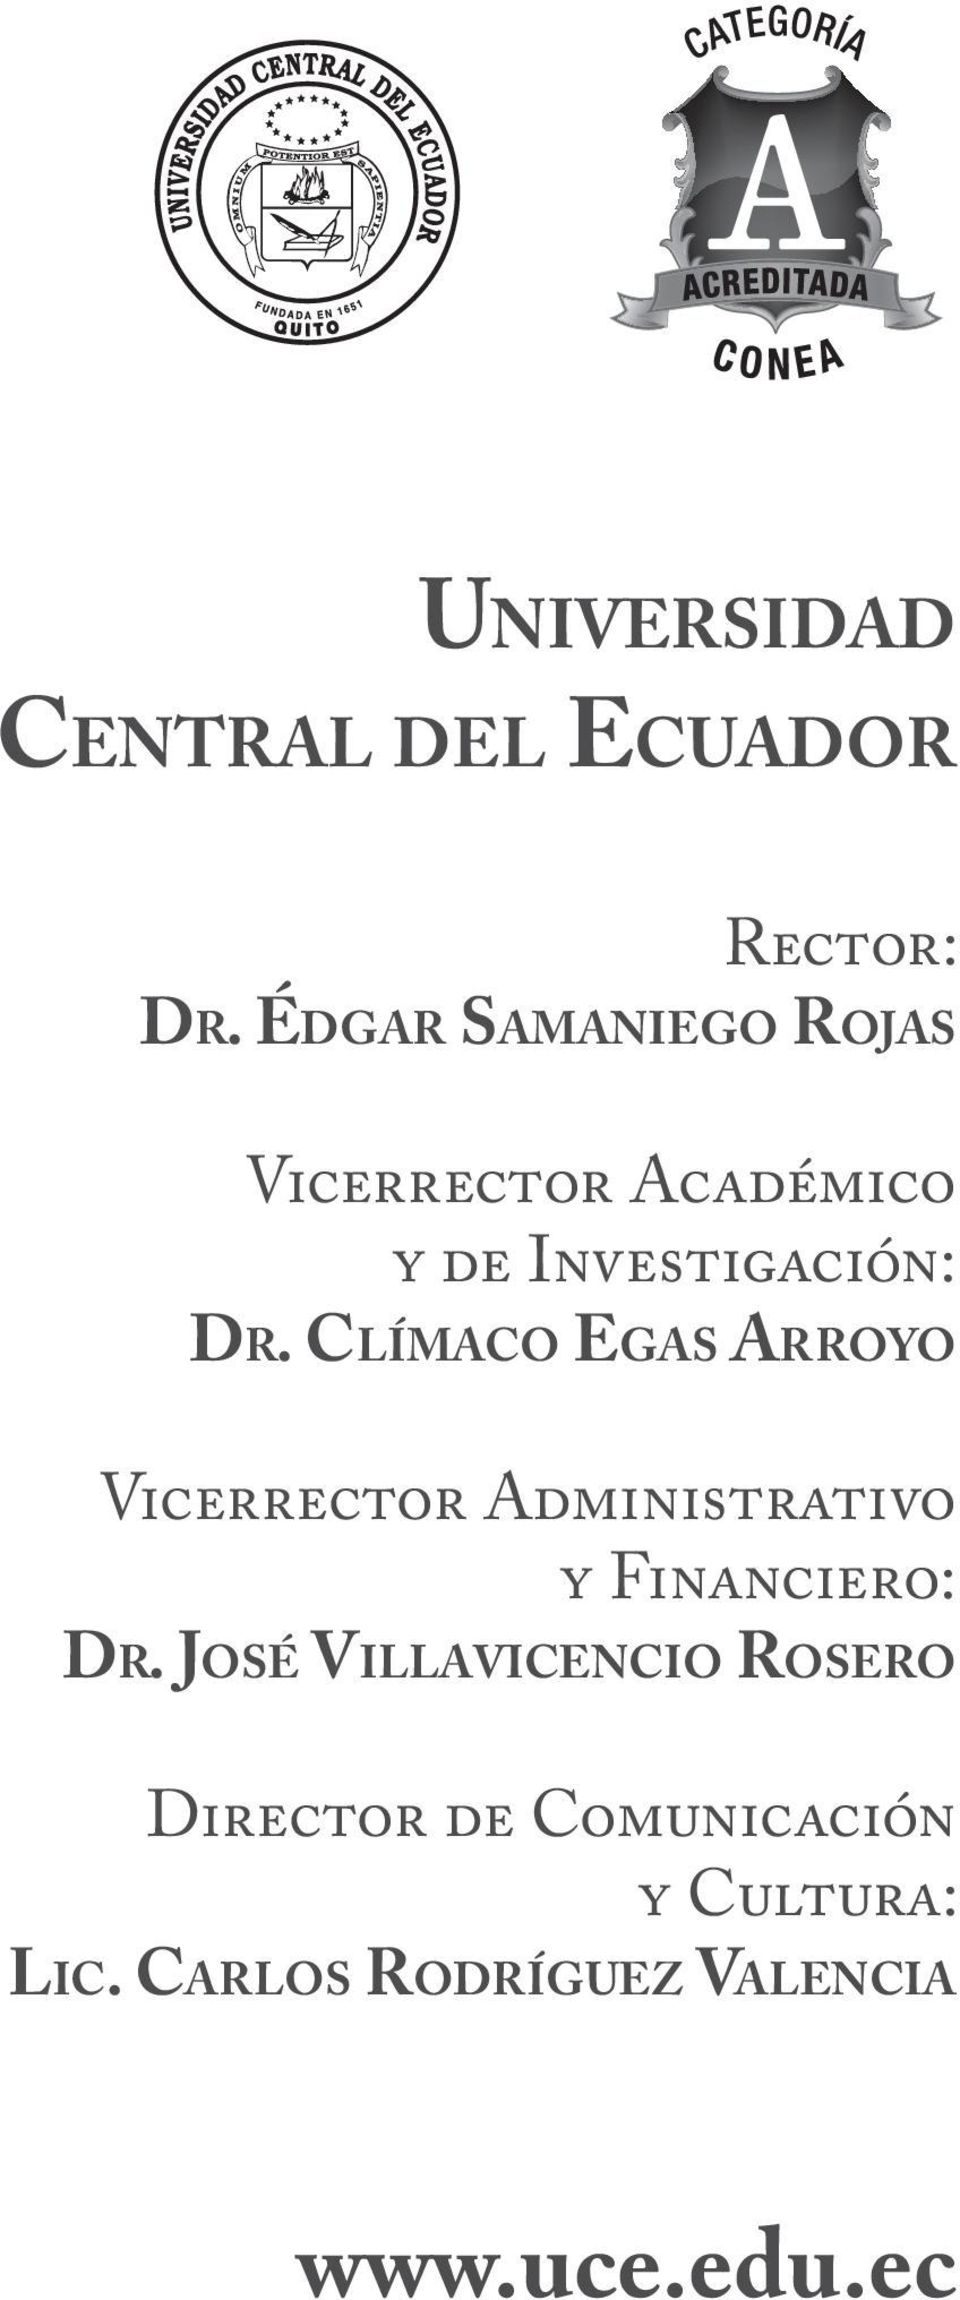 Clímaco Egas Arroyo Vicerrector Administrativo y Financiero: Dr.